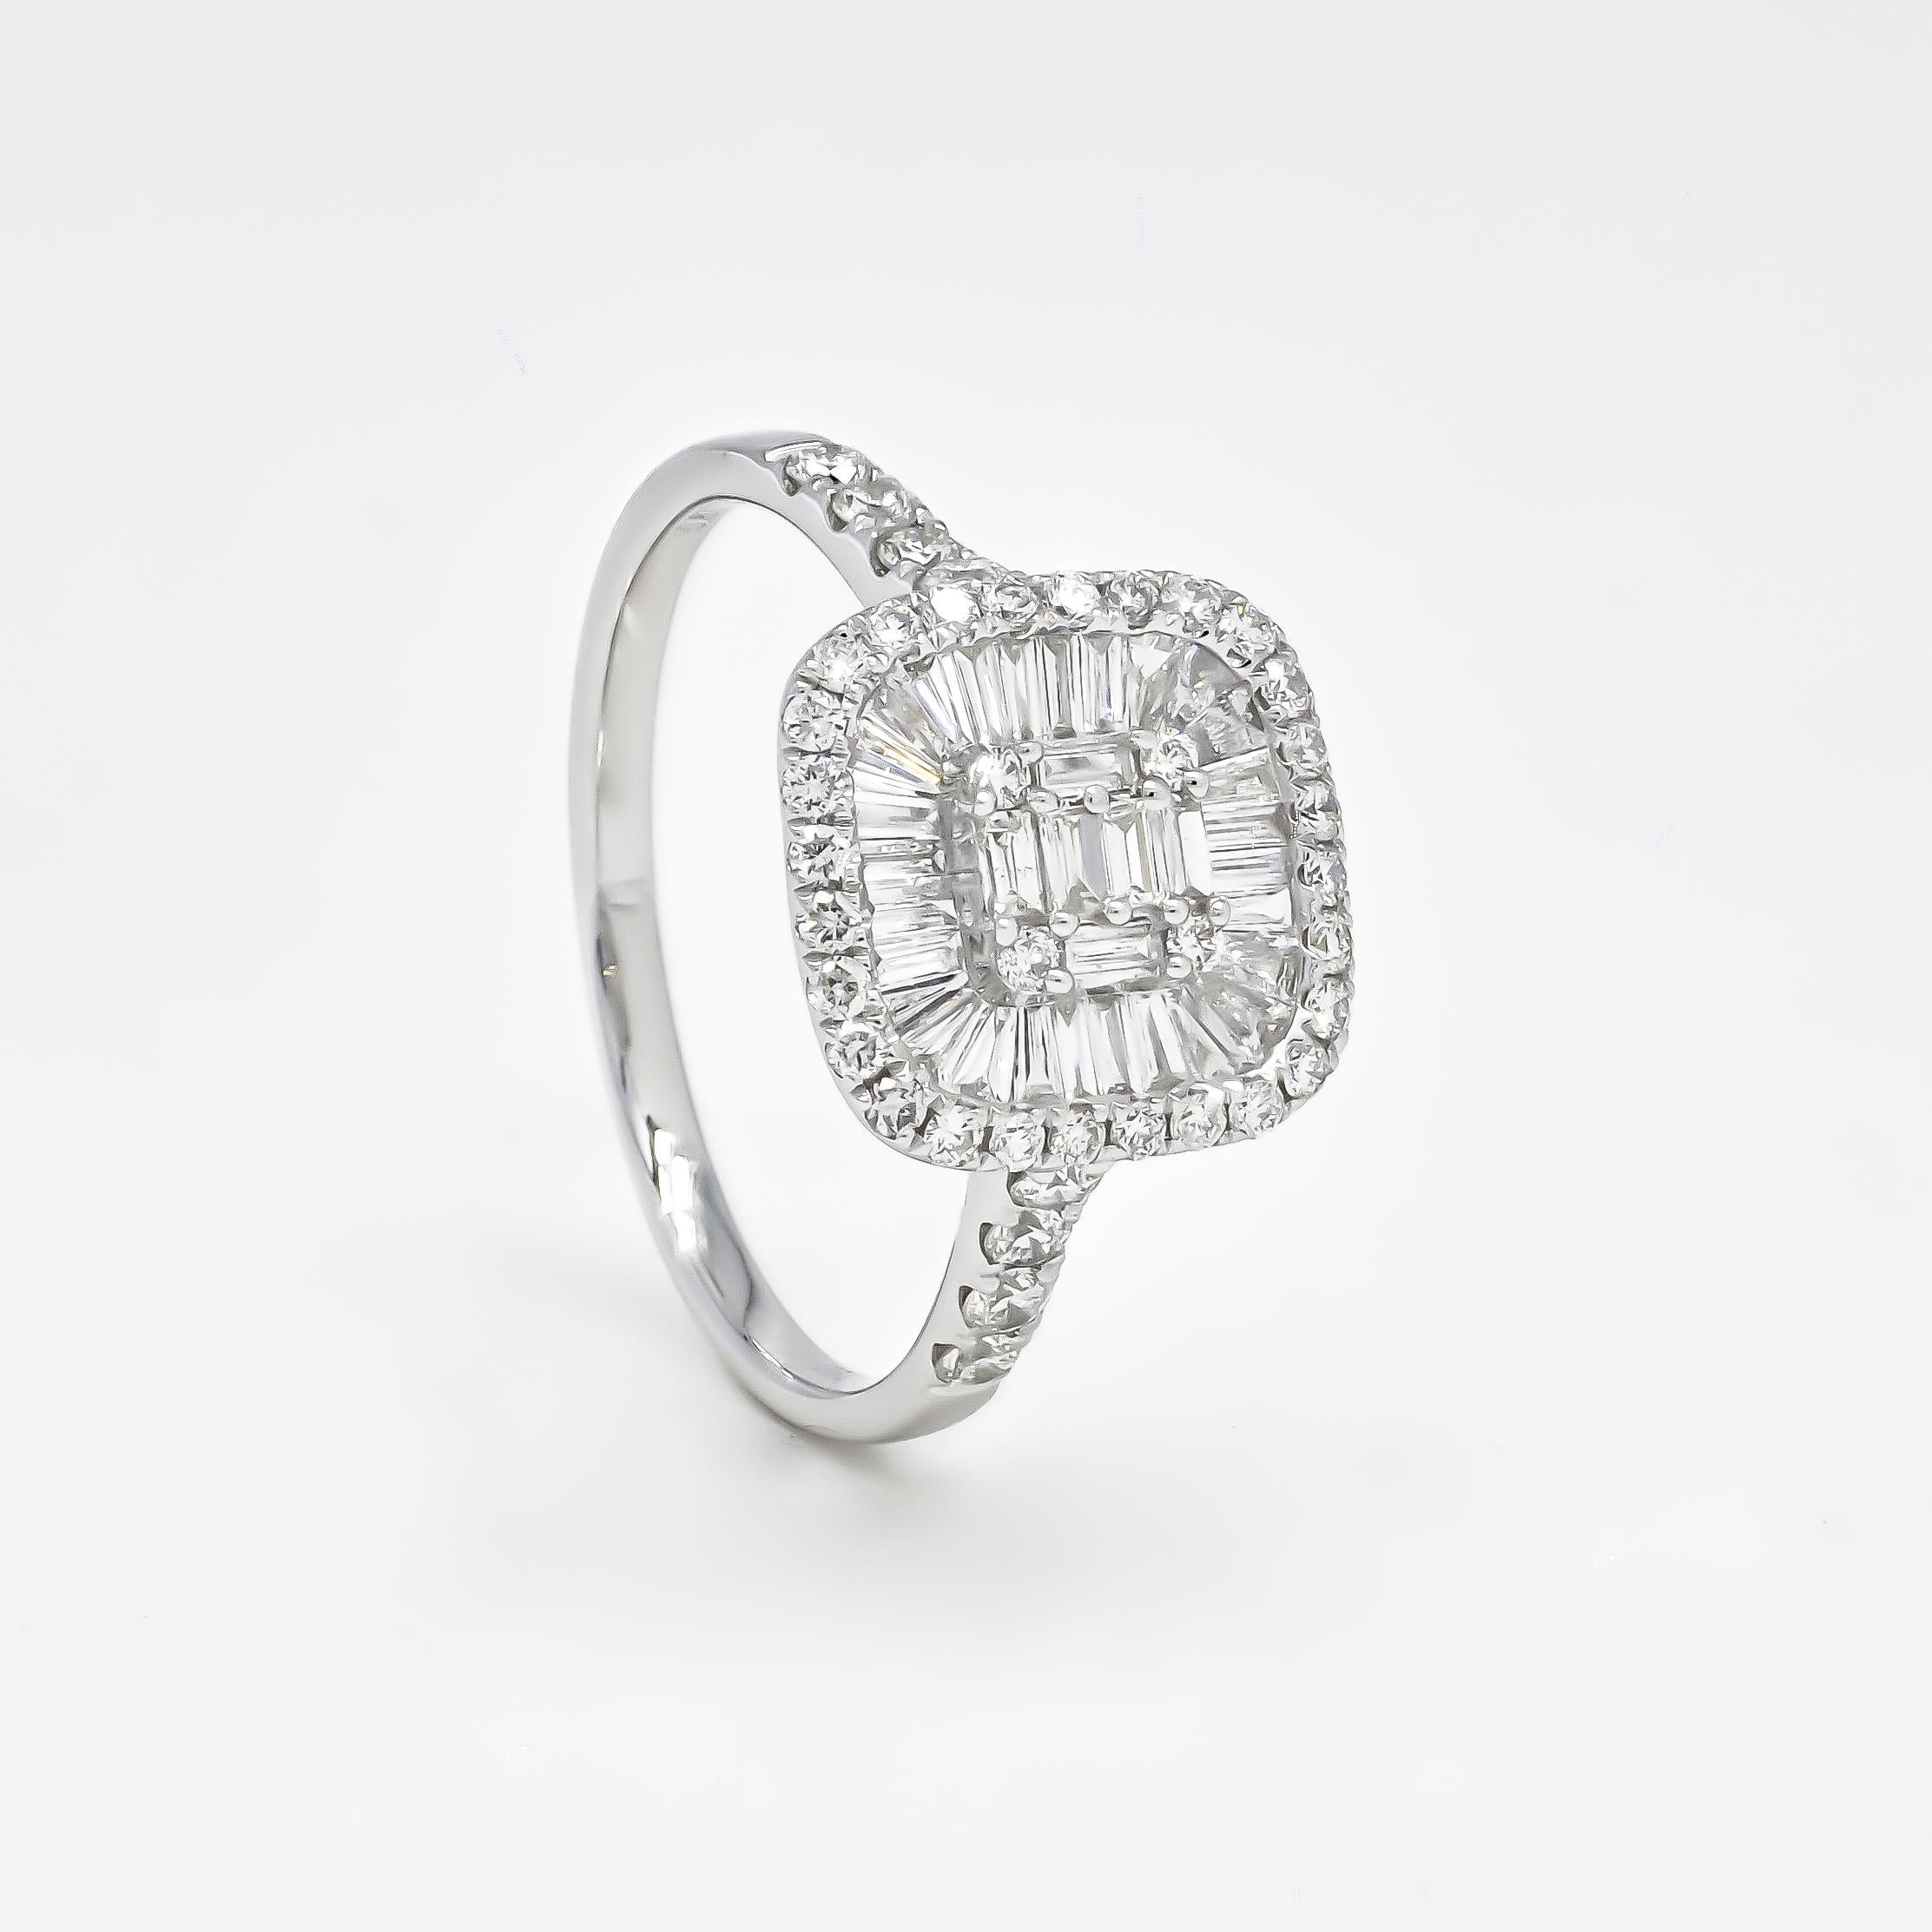 Der moderne 18-Karat-Weißgold-Brautring ist ein zierlicher und einzigartiger Diamantring, perfekt für die moderne Braut, die mit ihrem Schmuck gerne ein Statement setzt. Das Starburst-Design mit den Baguette-Diamanten verleiht dem Schmuckstück